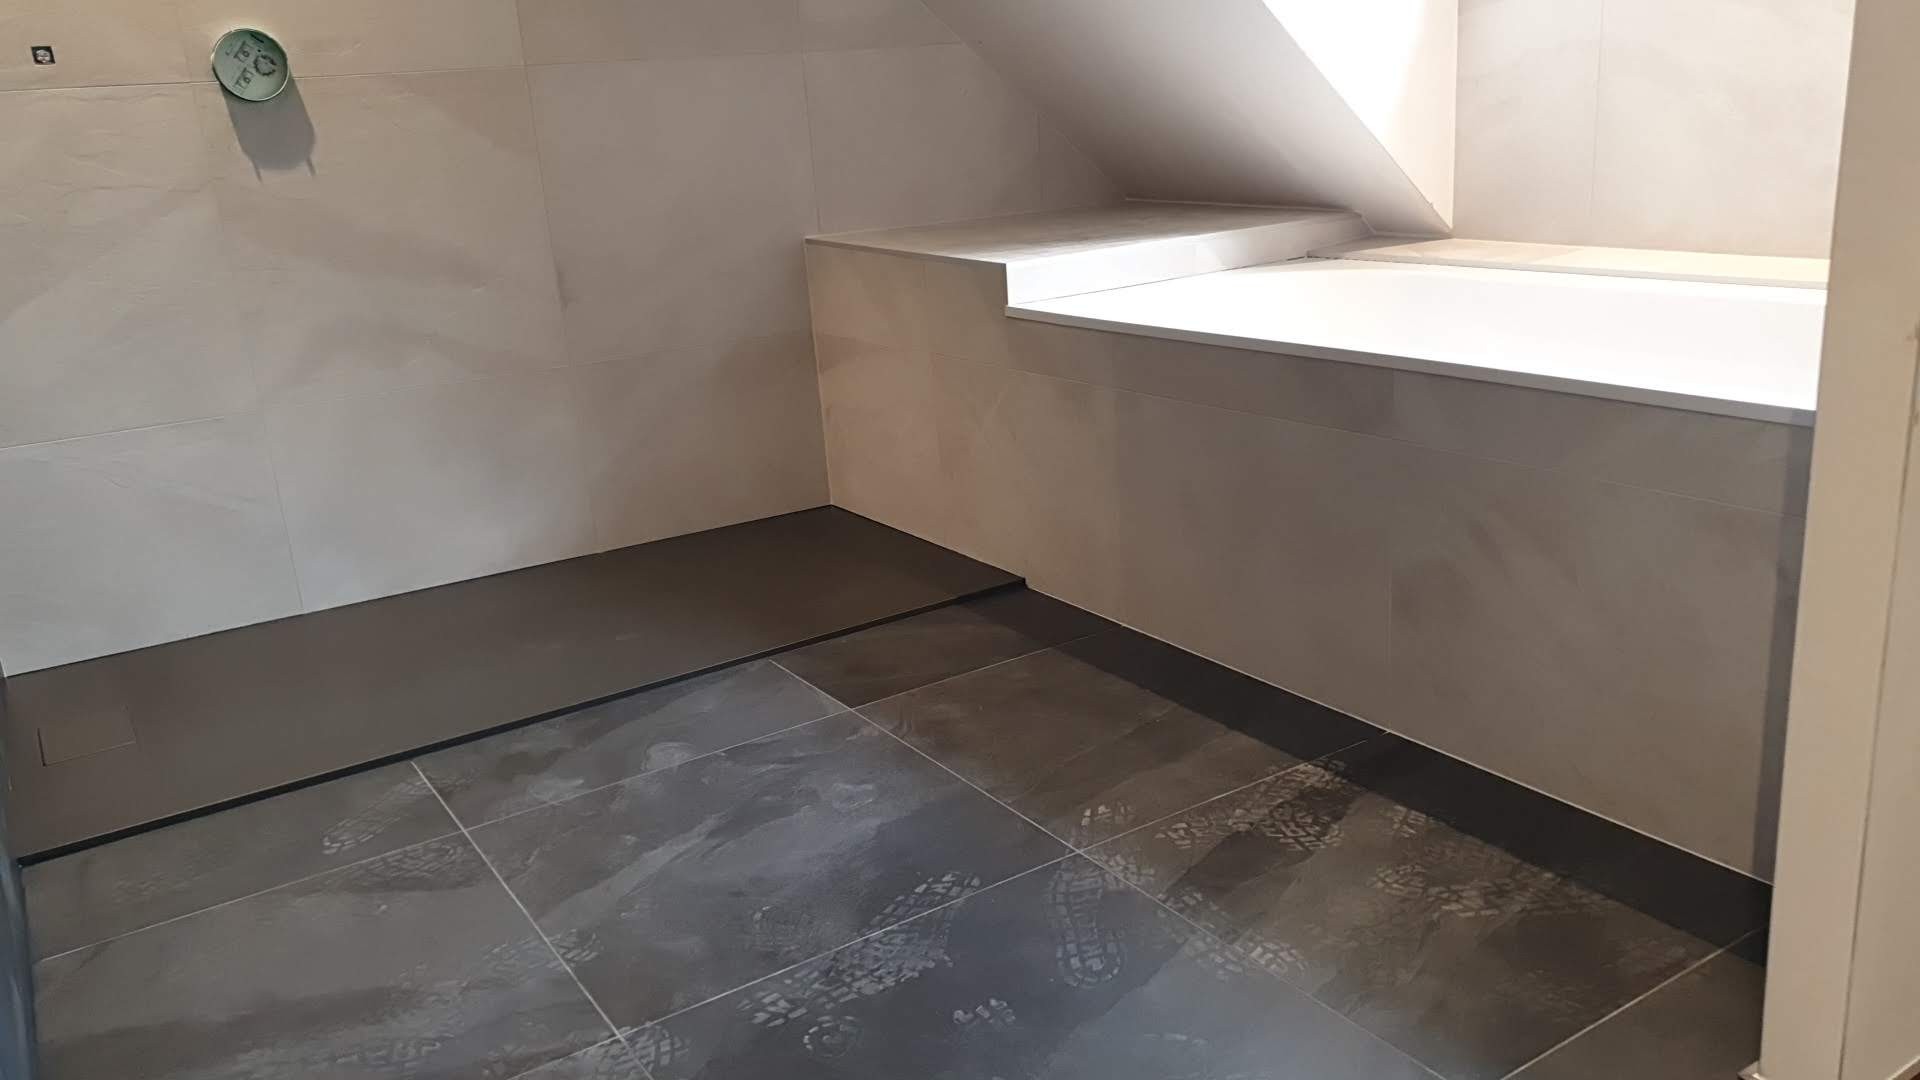 xtension Maison, projet de création d'un garage + Chambre et salle d'eau - Travaux de finitions des revêtements de sol de la salle d'eau après pose des sanitaires